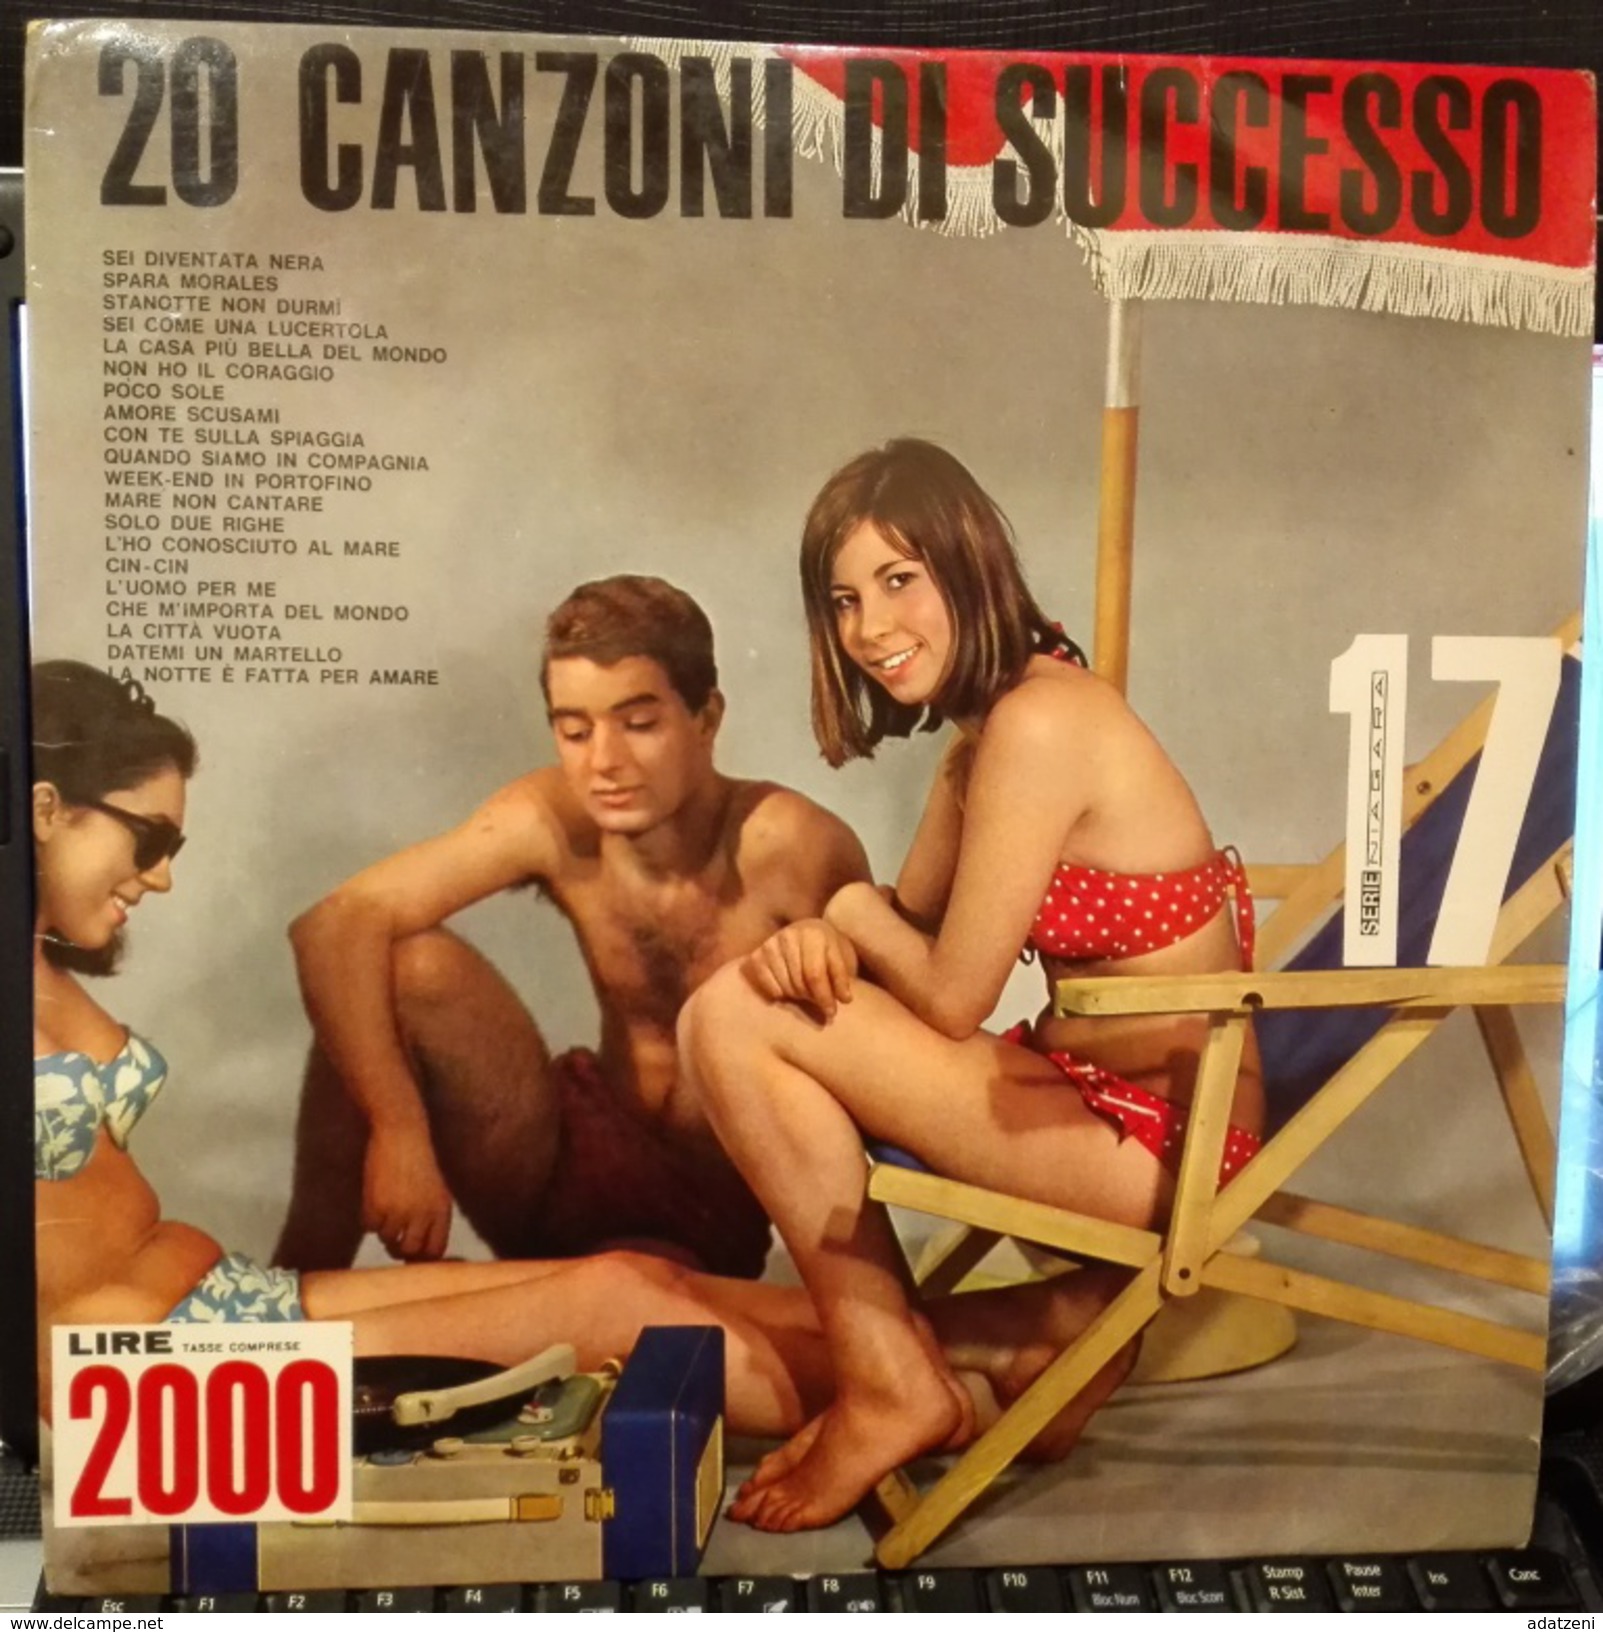 20 SUCCESSI DEL SECOLO NIAGARA 17 LP TONY ARDEN GIUSY VITTORIO VITTI MARIO BATTAINI - Other - Italian Music